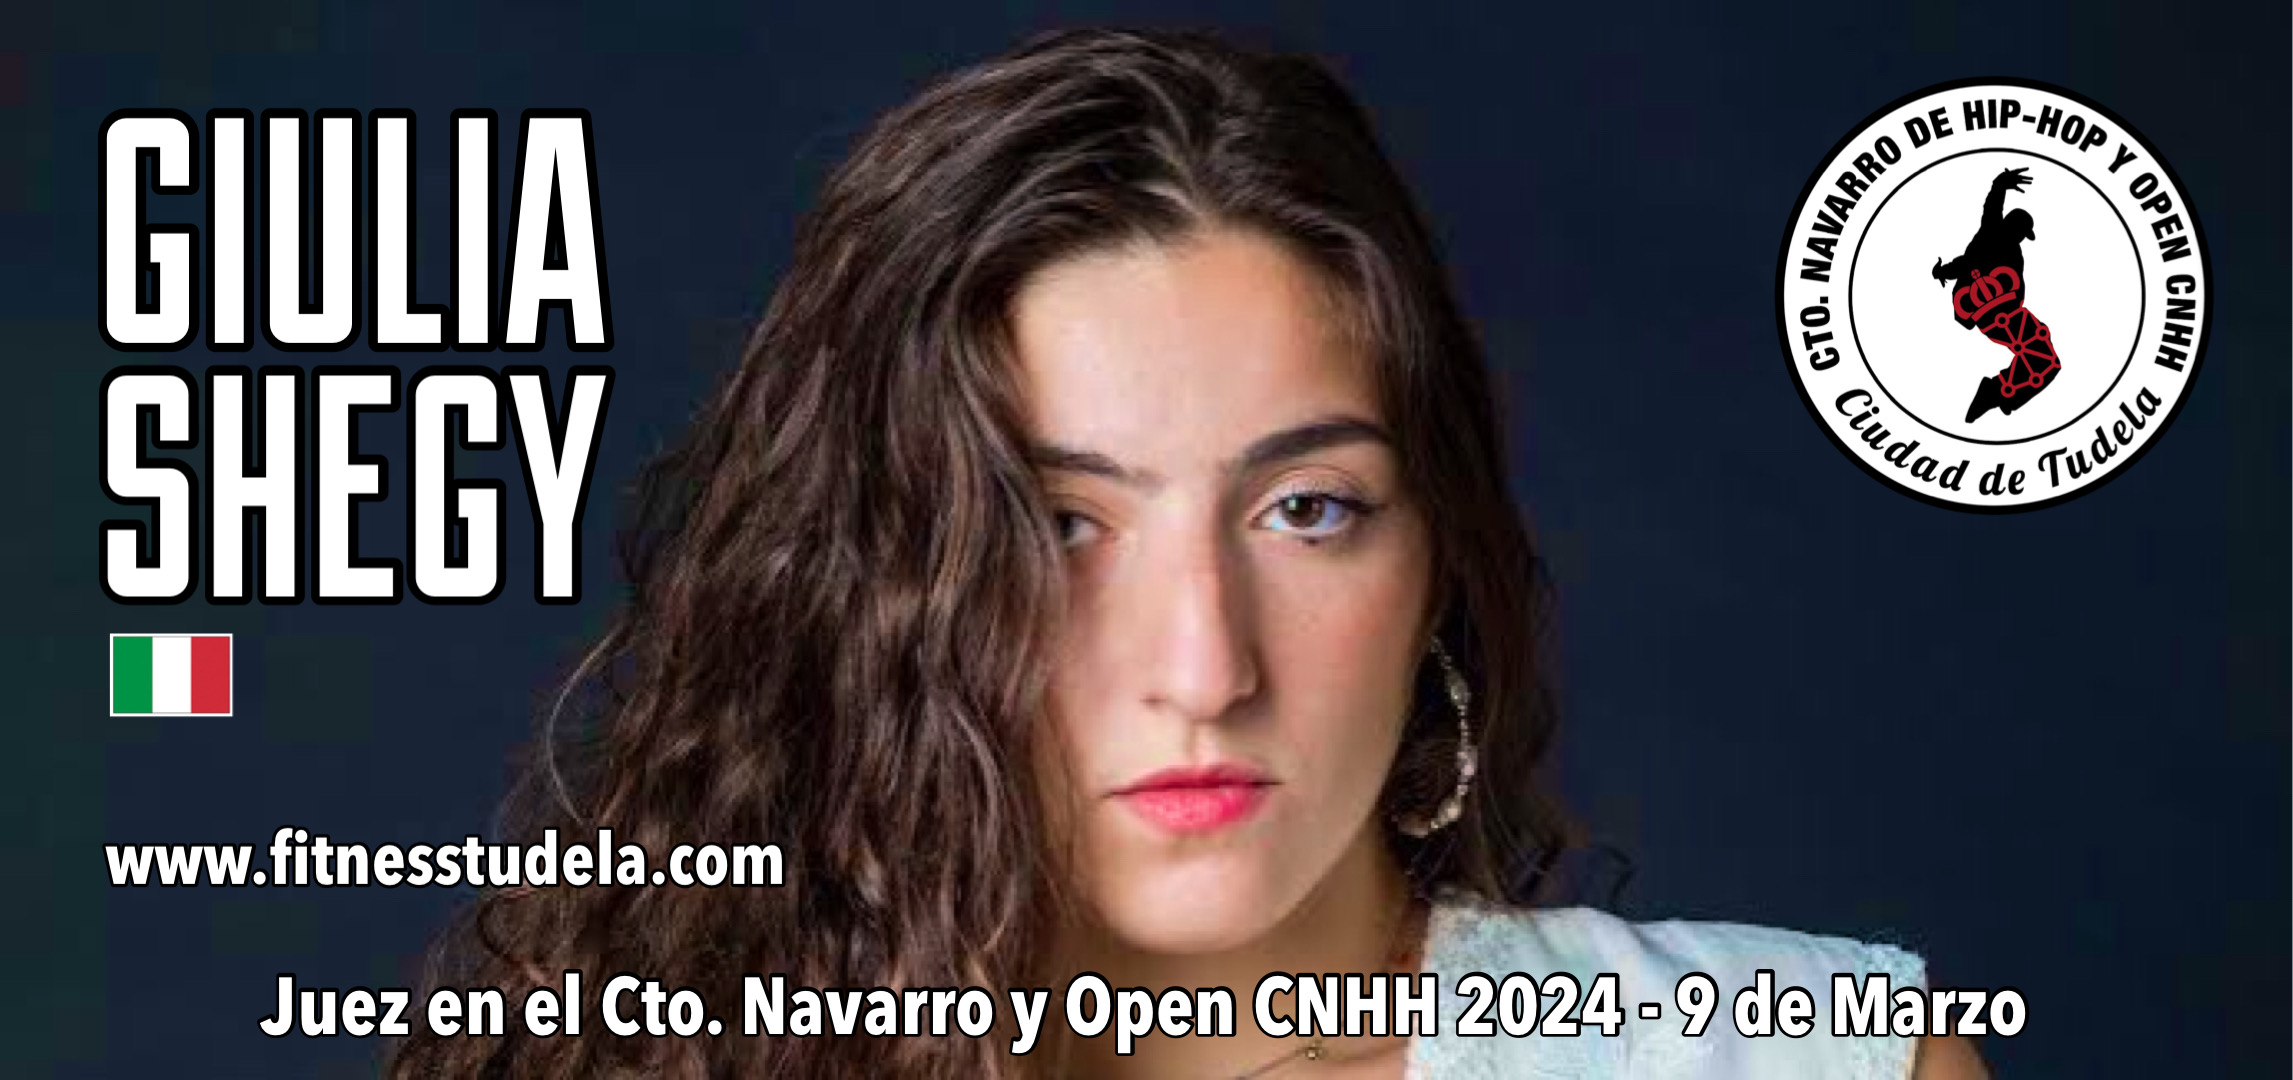 GIULIA SHEGY – JUEZ EN EL CTO. NAVARRO Y OPEN CNHH 2024